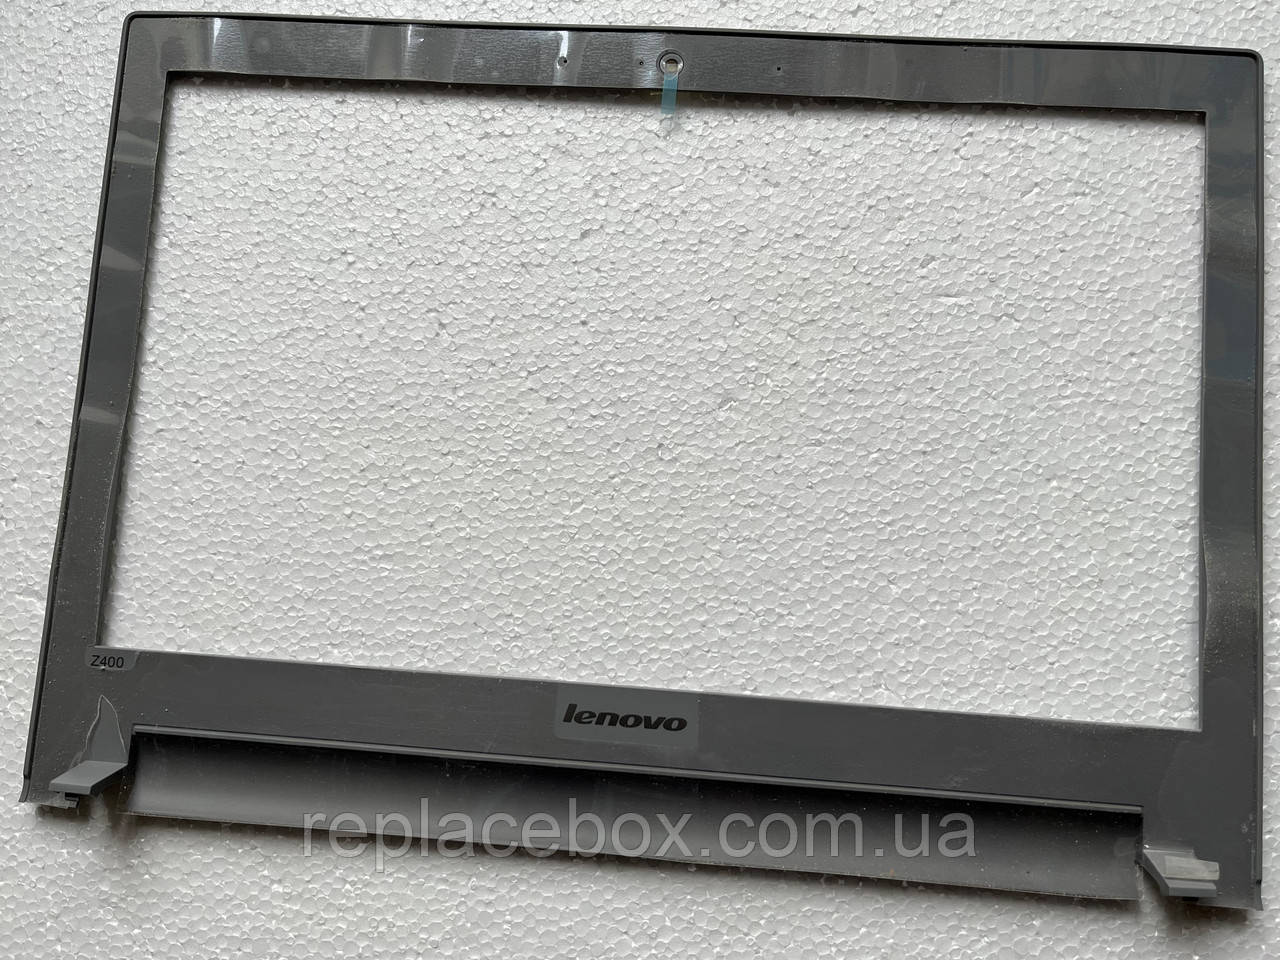 Рамка матриці екрана до ноутбука Lenovo IdeaPad Z400 FRU:90202316 нова оригінал